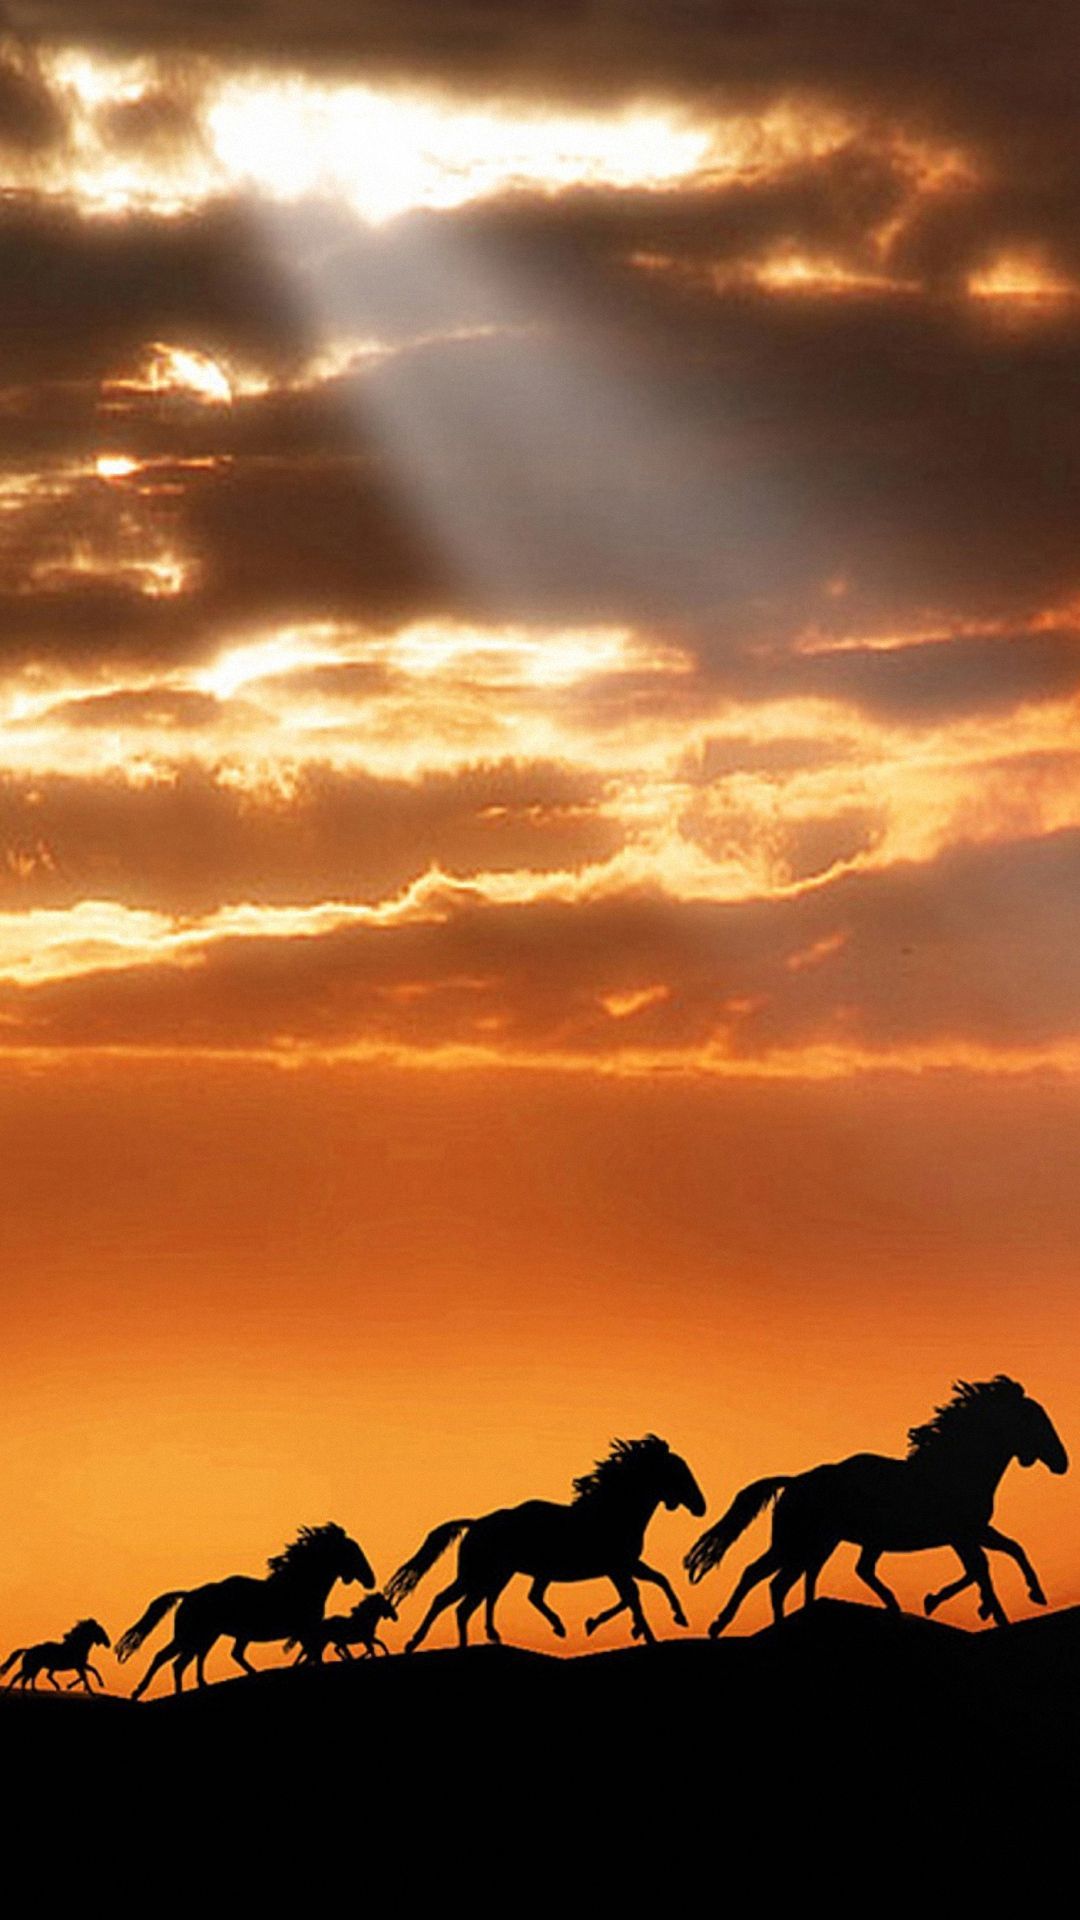 Samsung Galaxy 3D Wallpaper. Wild horses running, Horse wallpaper, Sunset silhouette